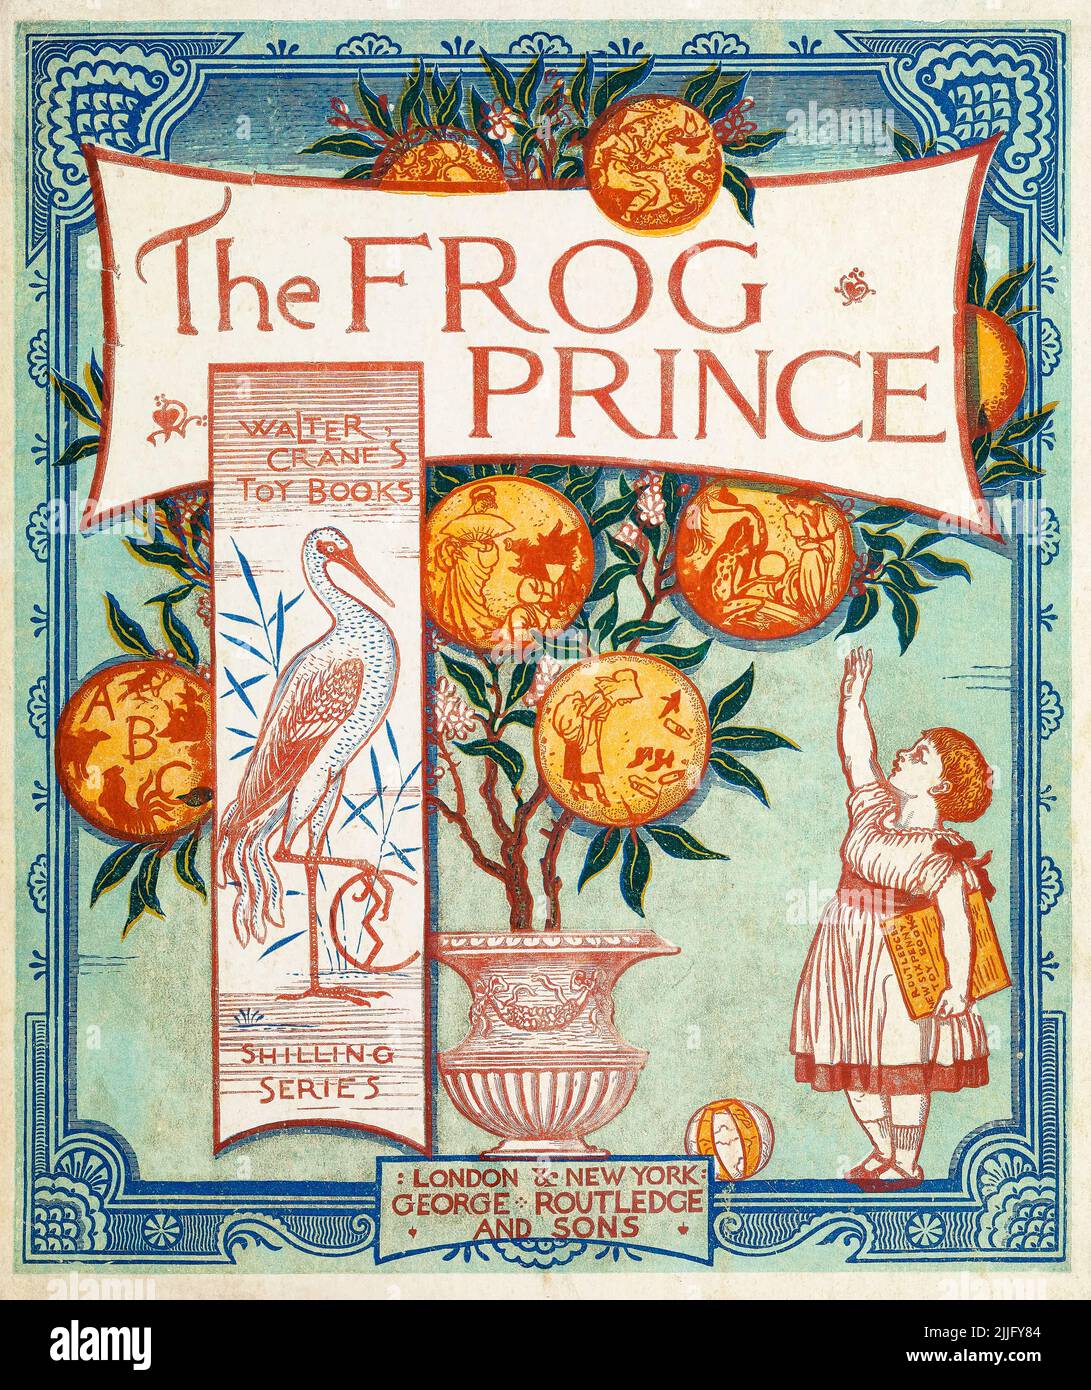 The Frog Prince, livre illustré pour enfants, illustration de la couverture par Walter Crane, 1874 Banque D'Images